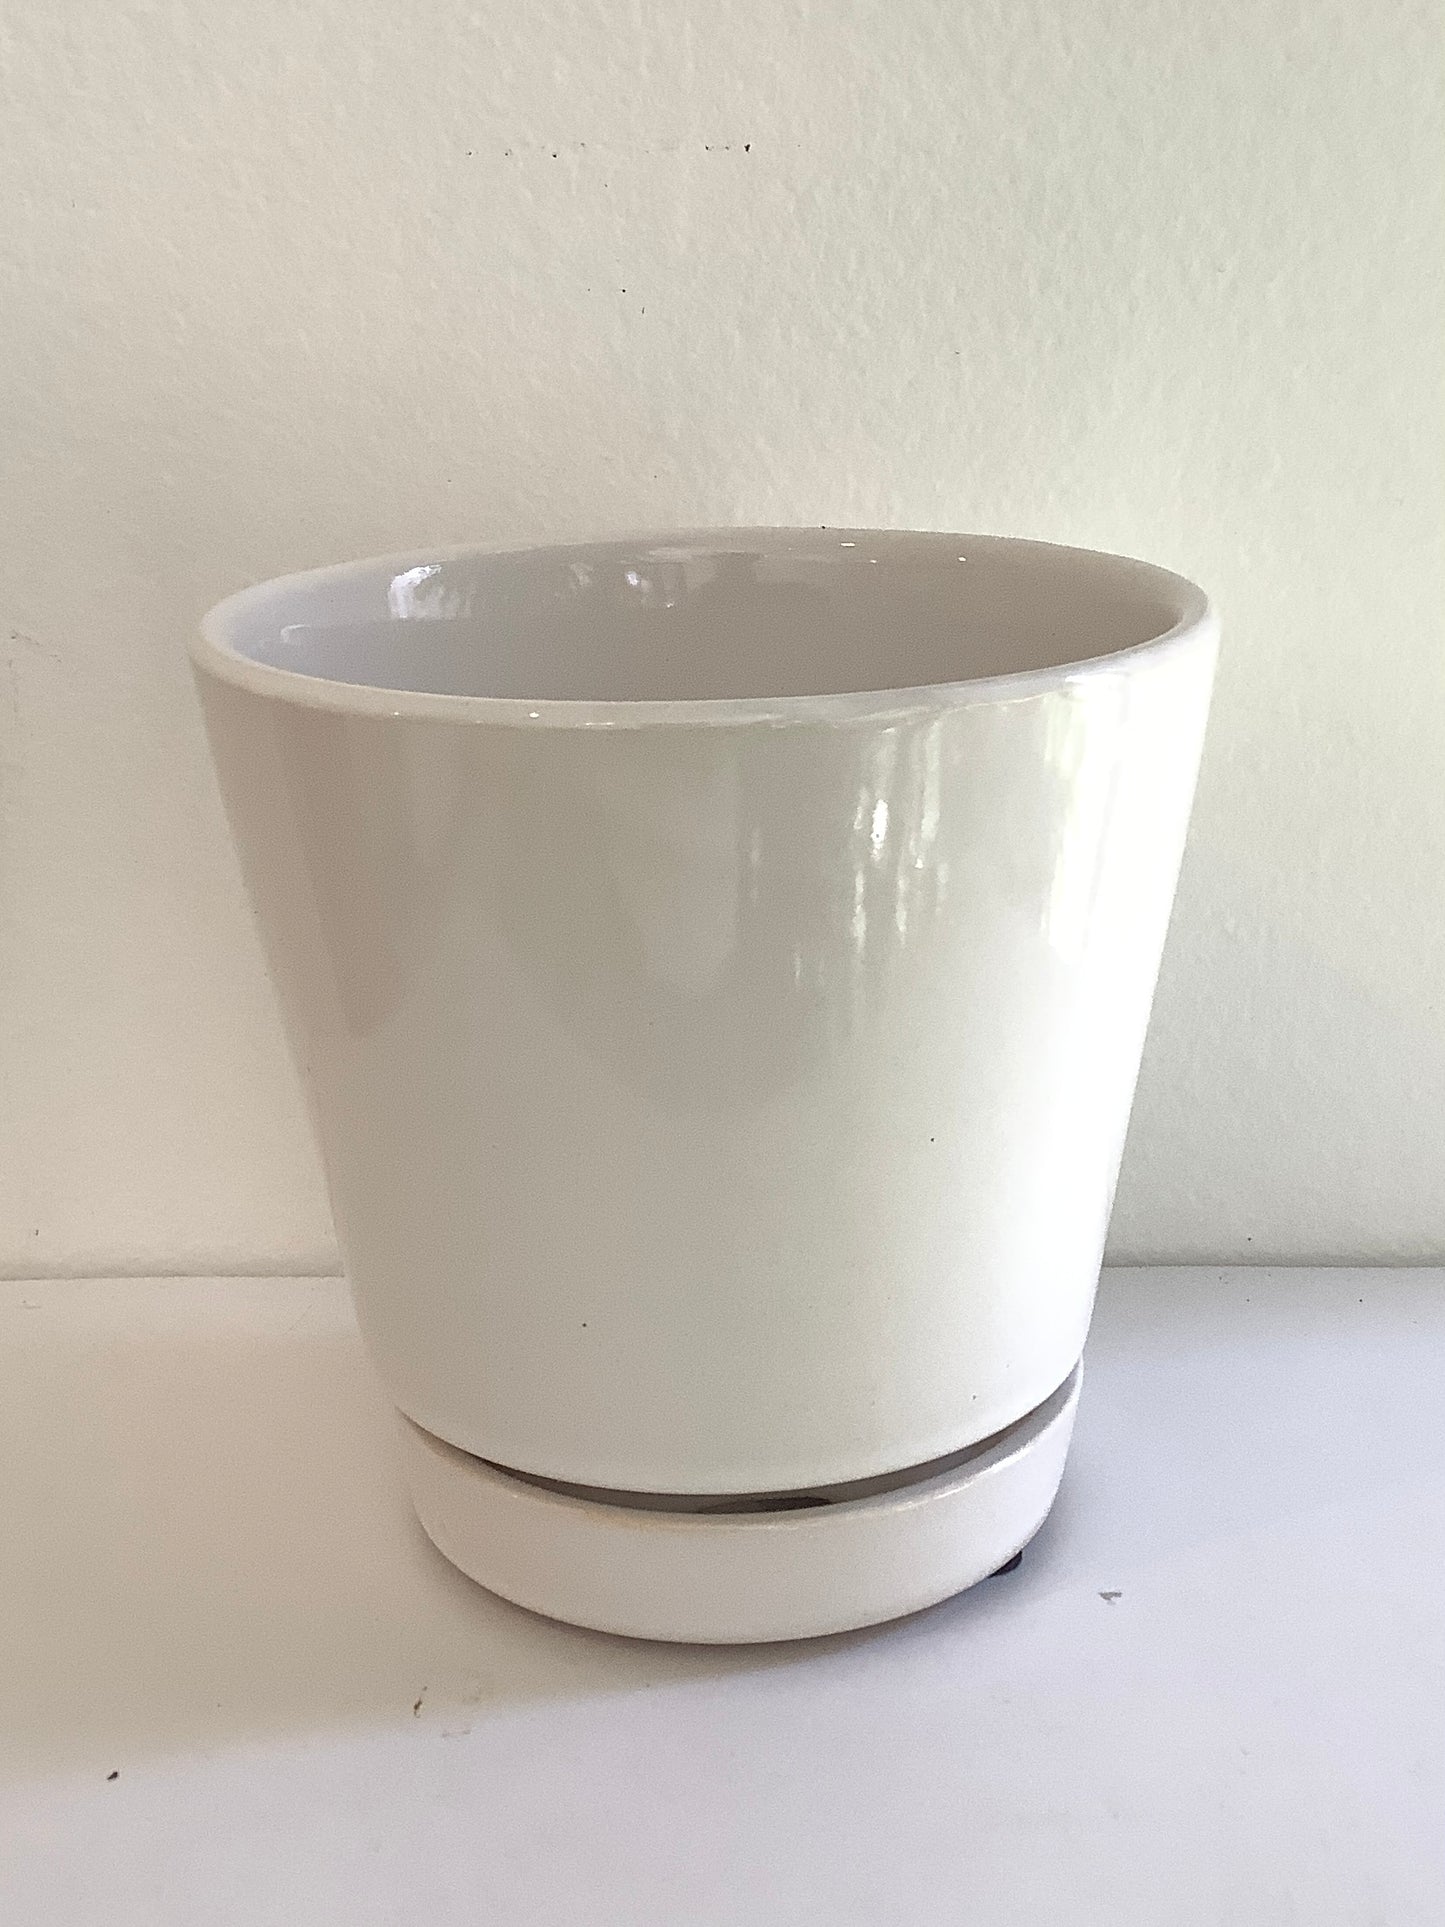 4" Gloss White Ceramic Planter Pot w/ Saucer